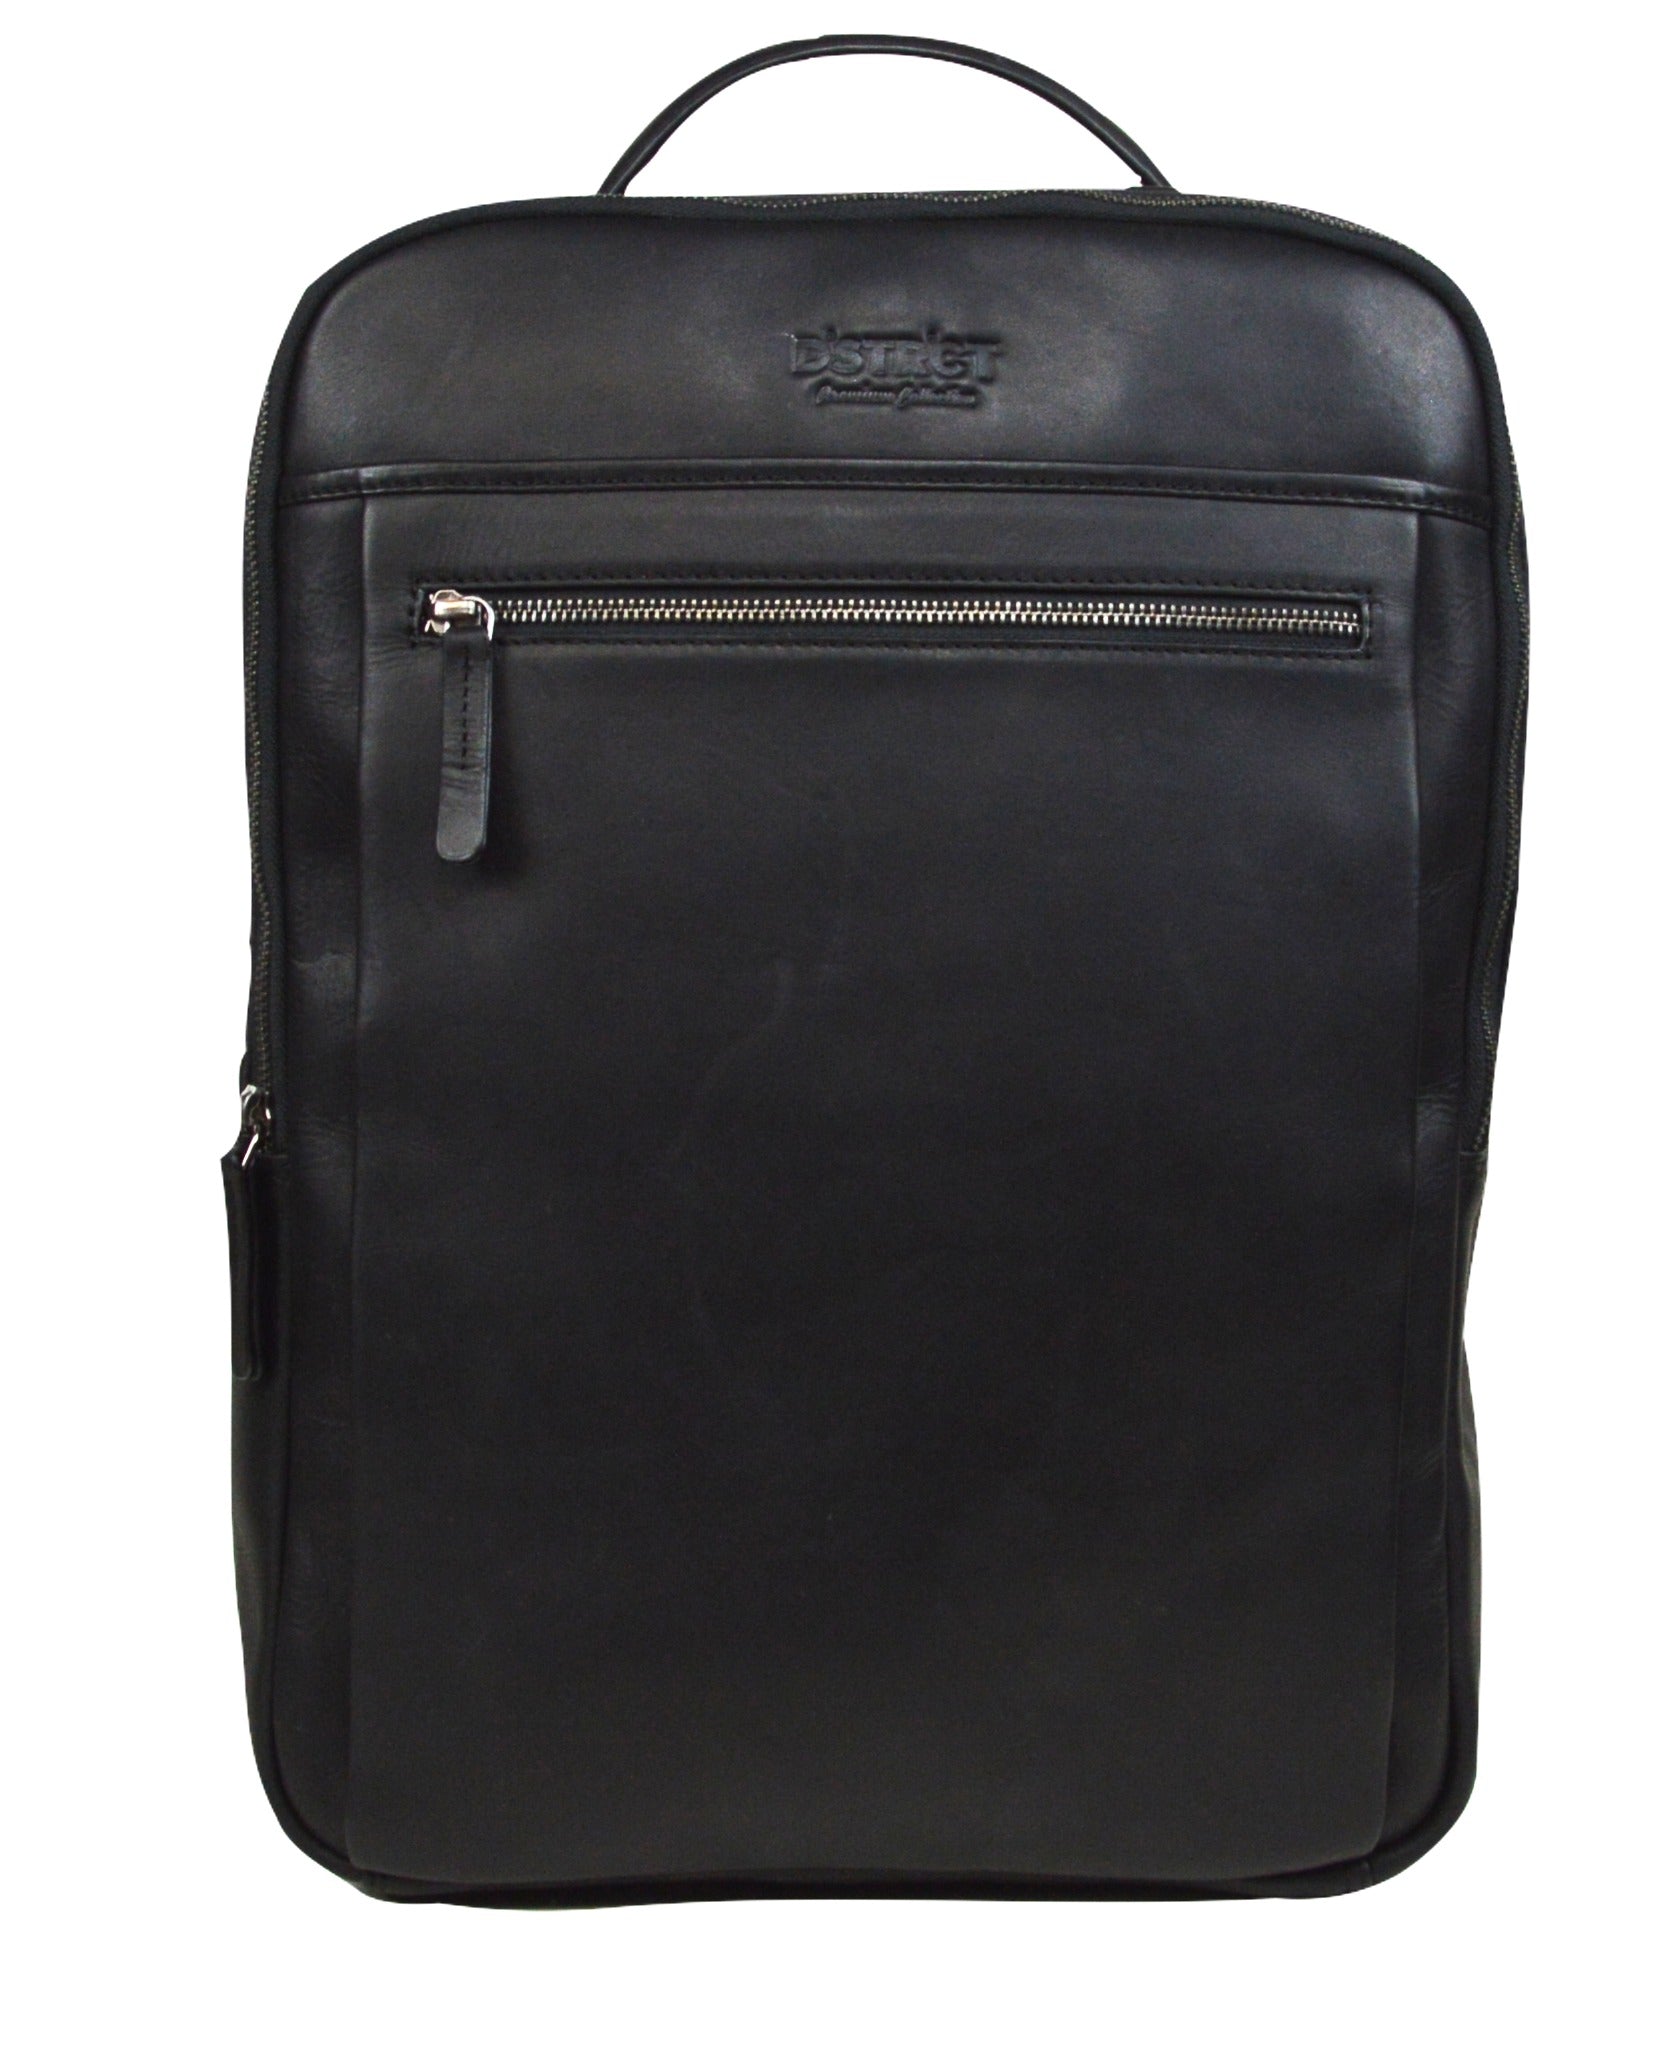 DSTRCT Leather Rucksack 15.6" Premium